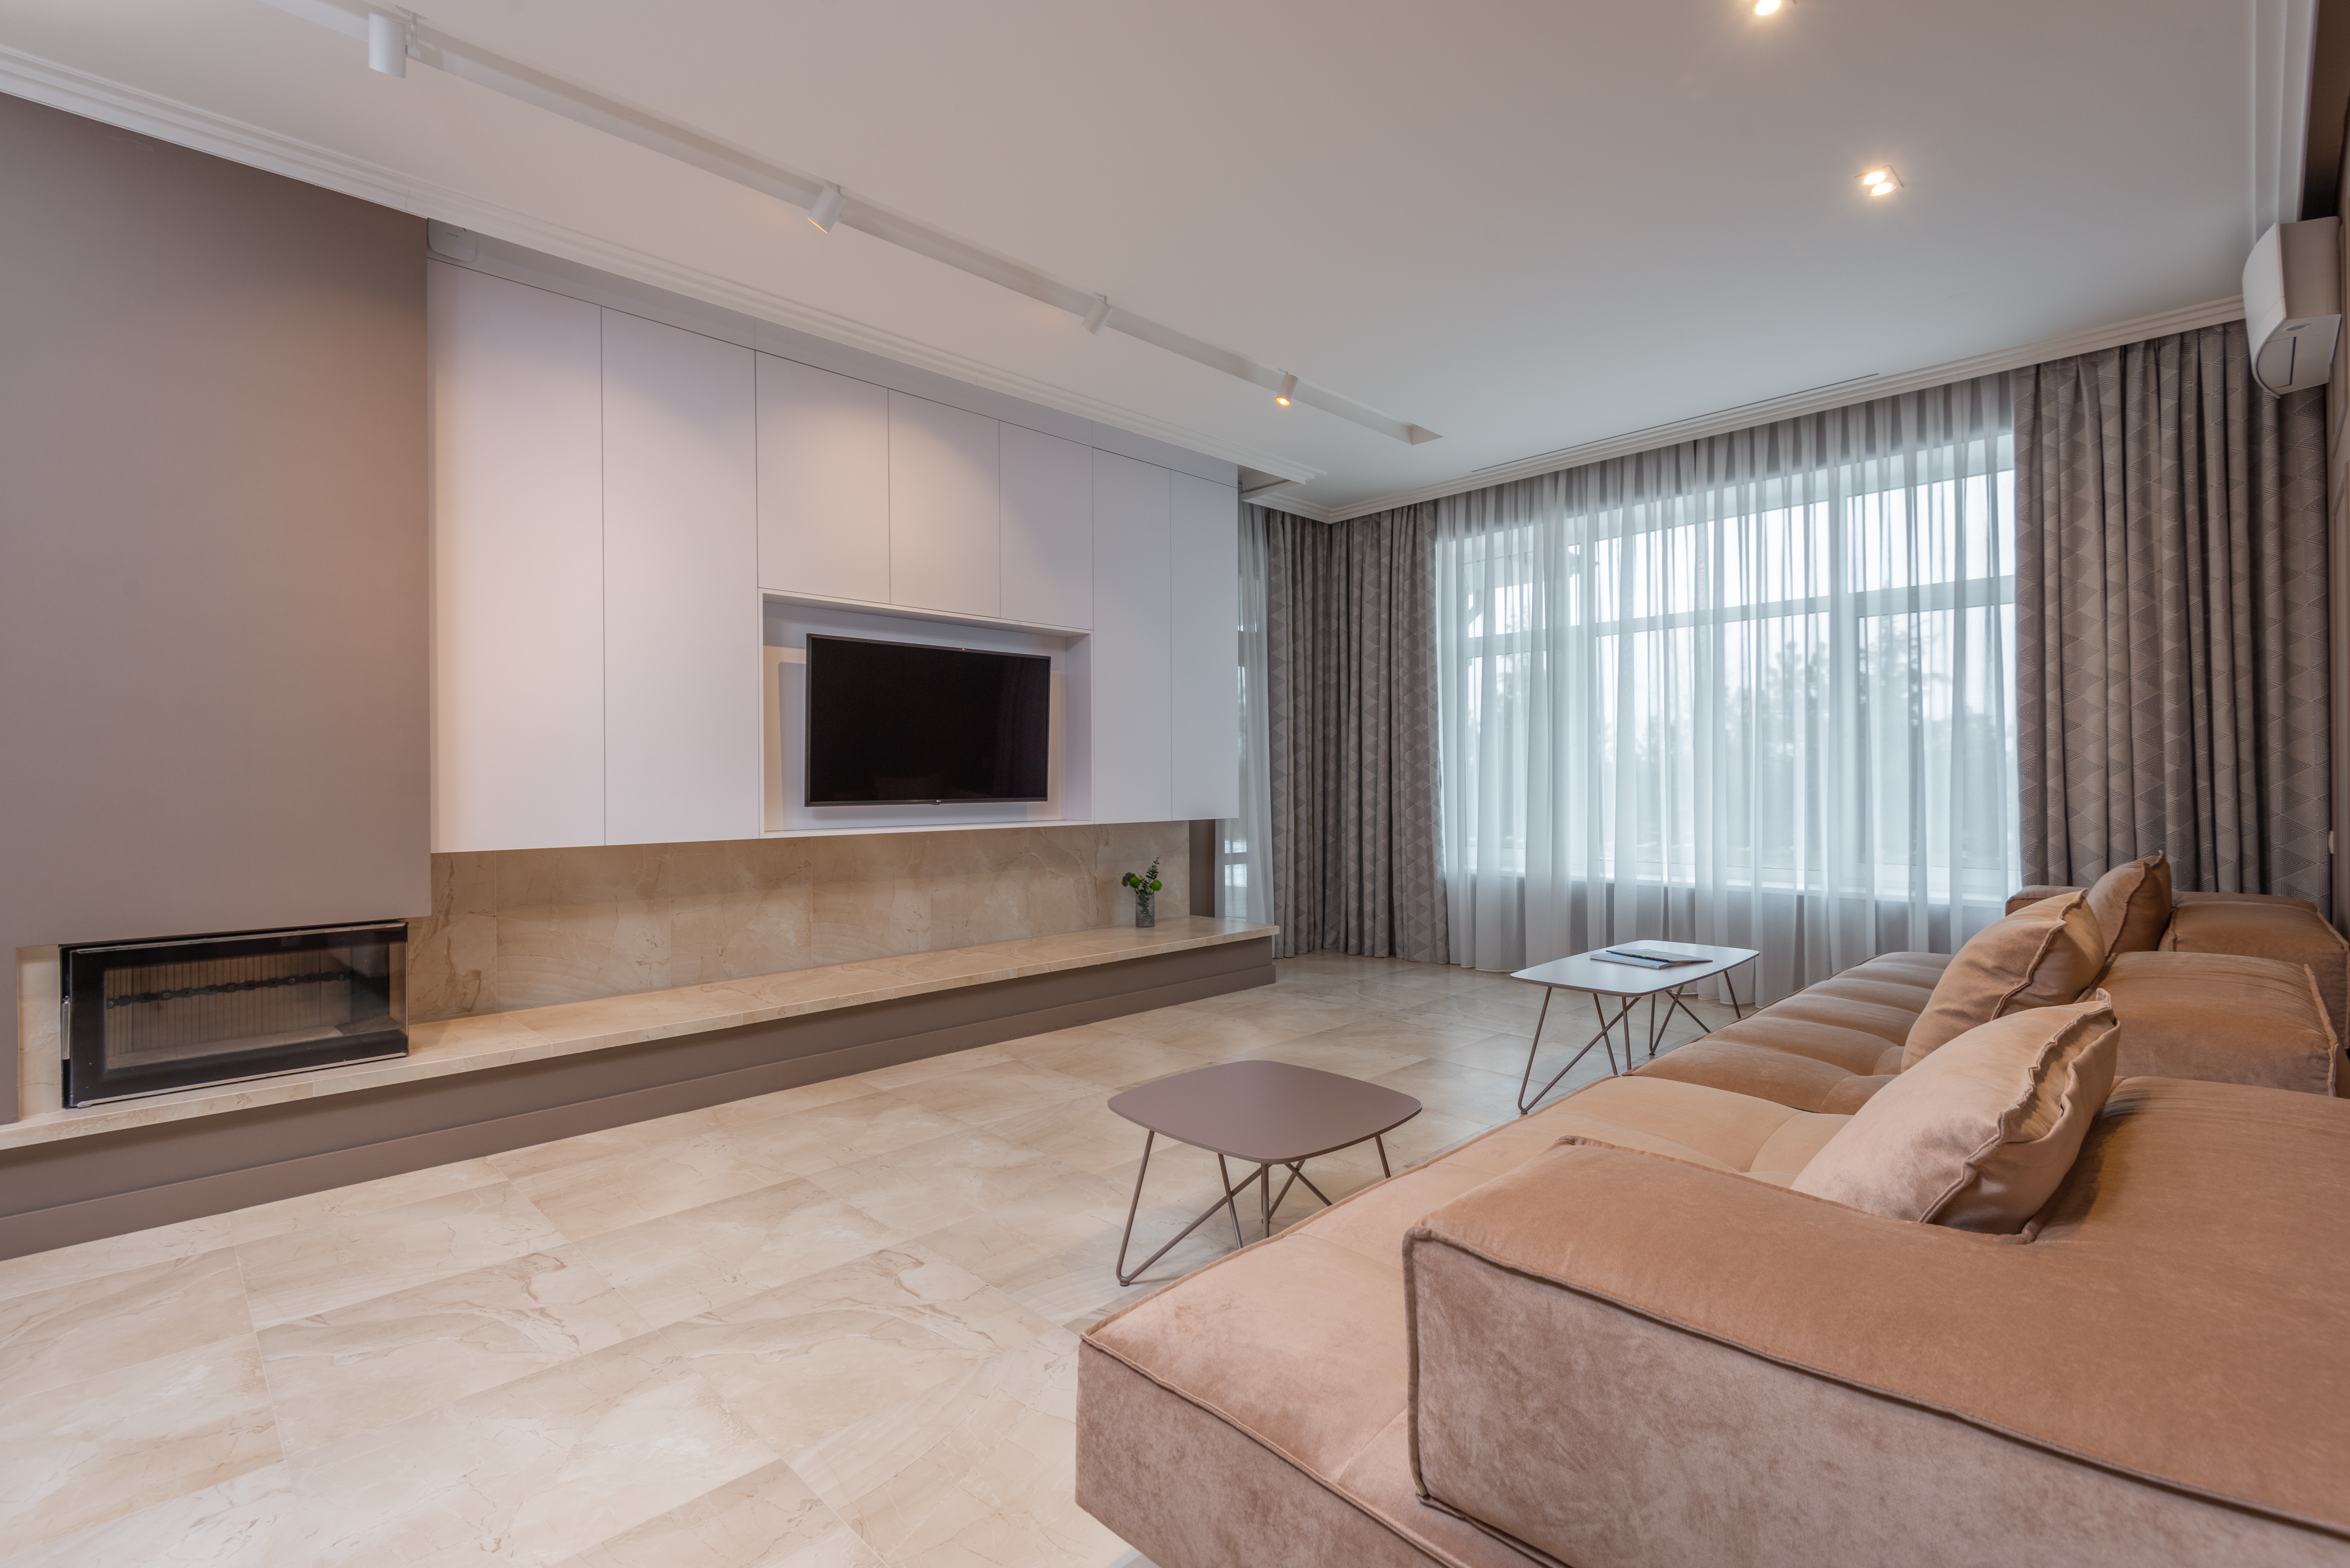 Moderná minimalistická obývačka s hnedými prvkami